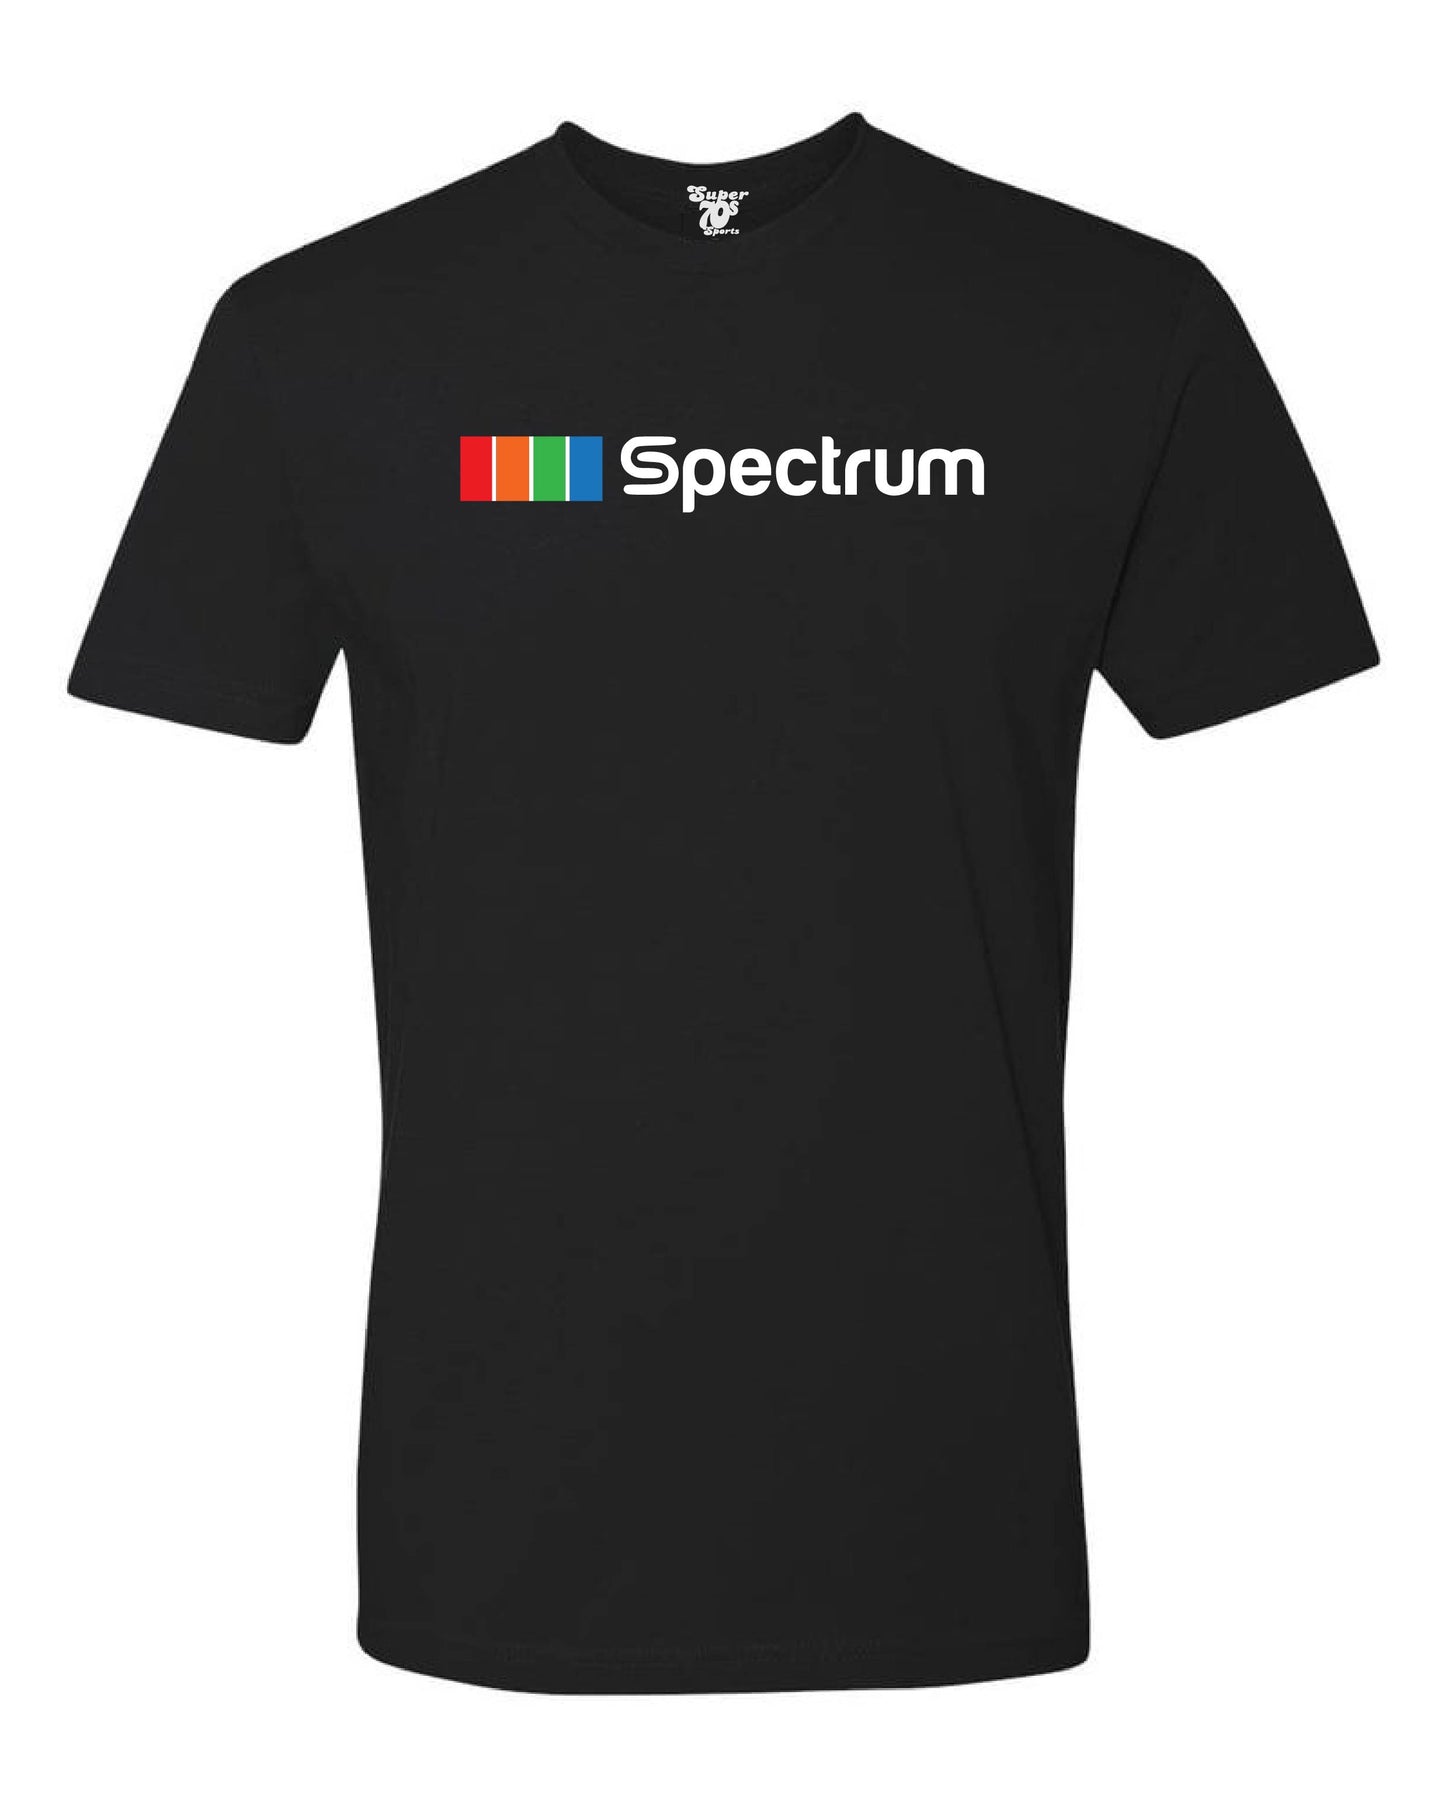 The Spectrum Tee